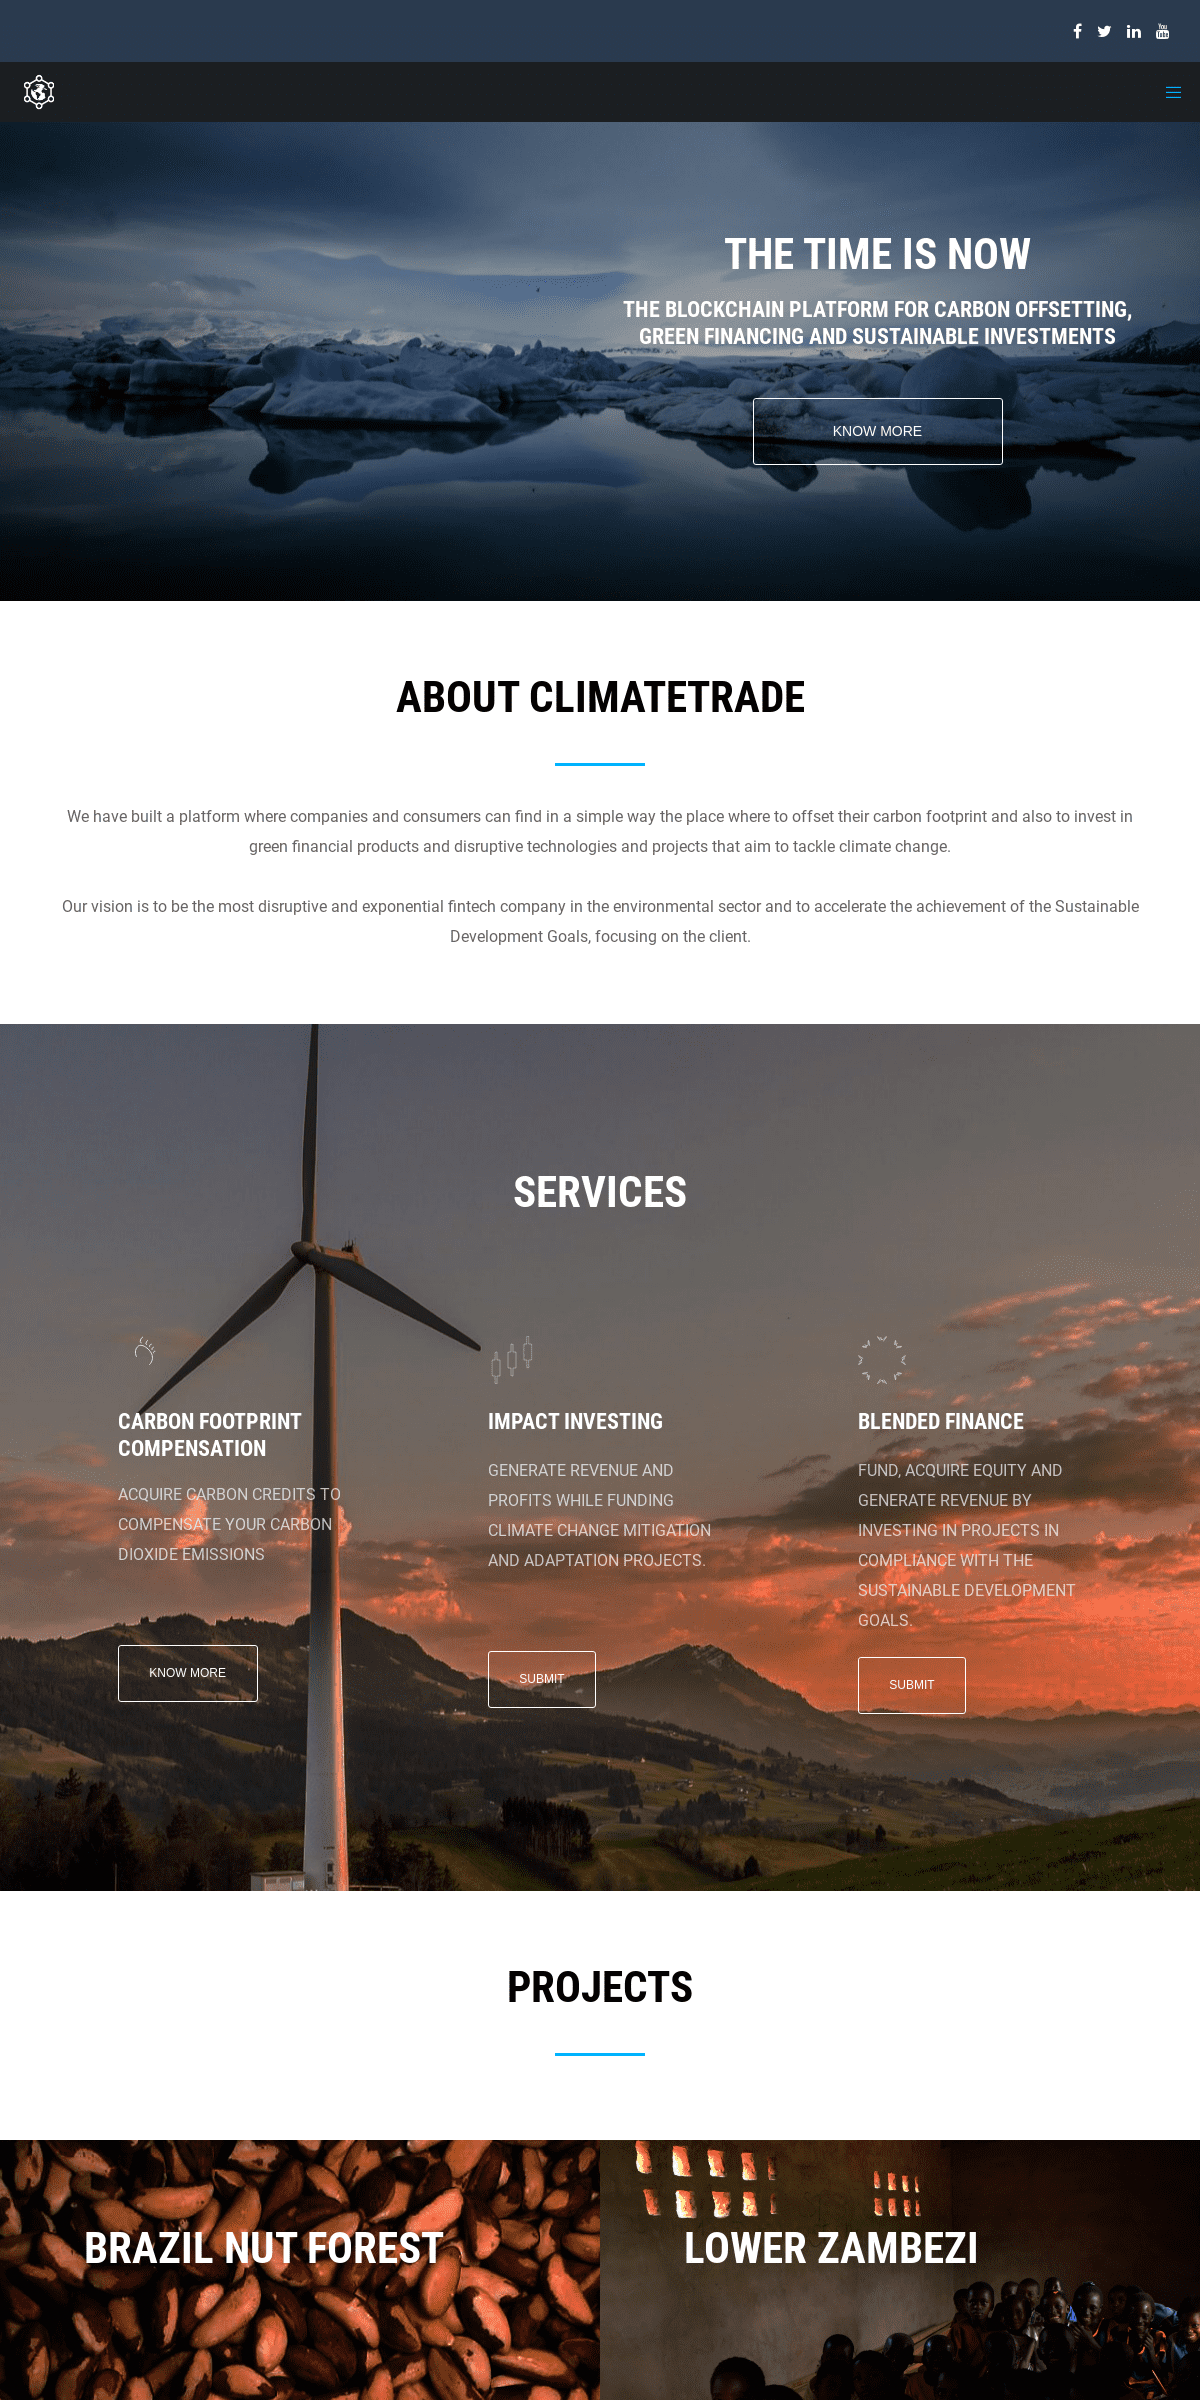 A complete backup of climatetrade.com